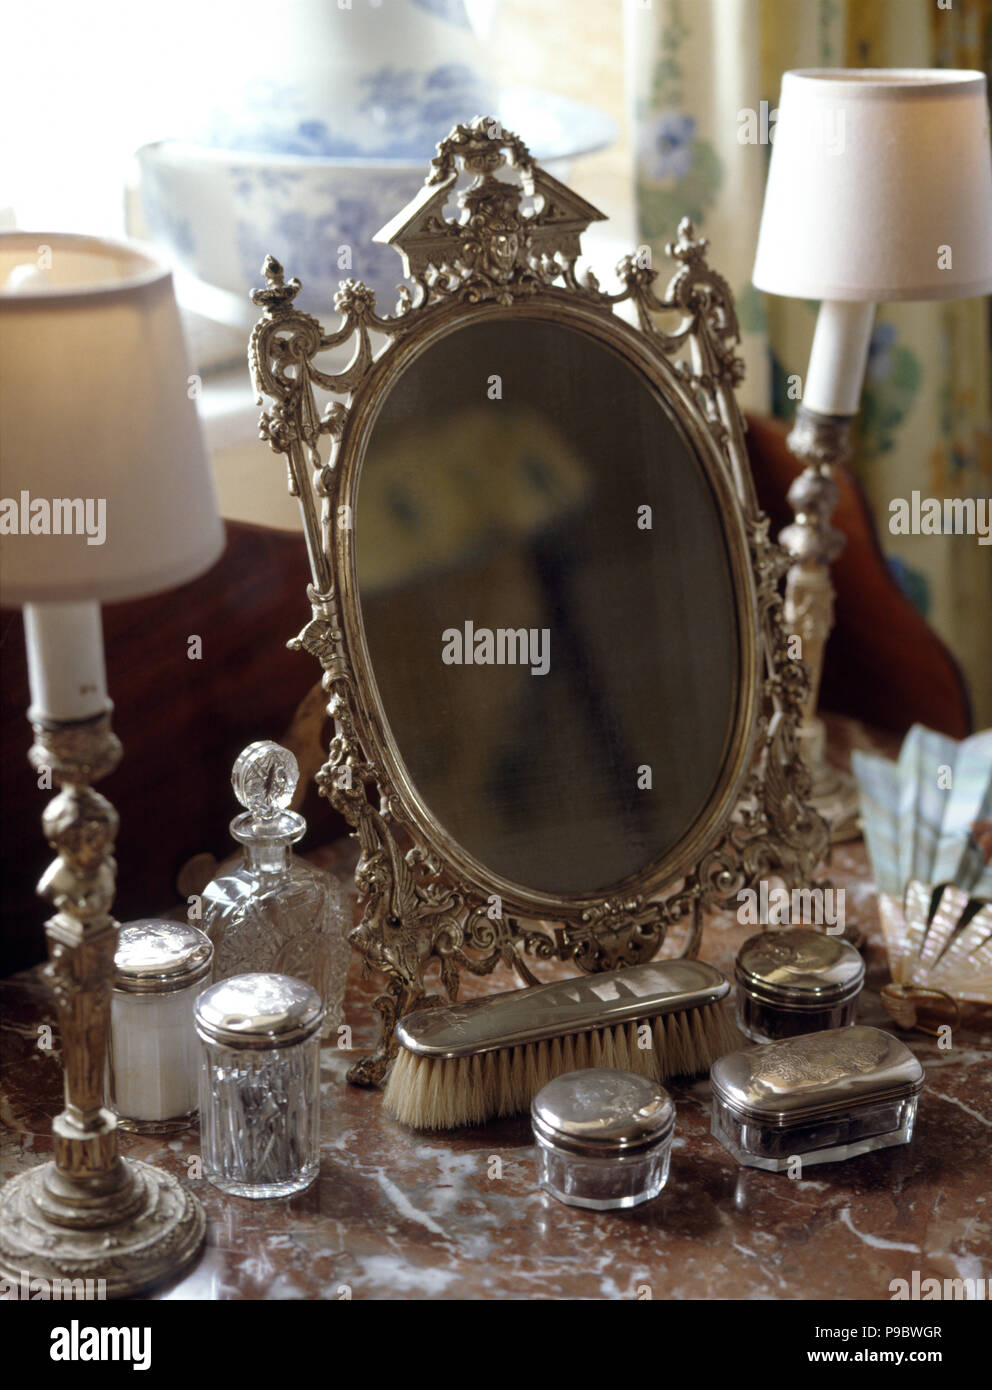 Close-up d'un miroir d'argent avec une collection d'argenterie sur une coiffeuse Banque D'Images